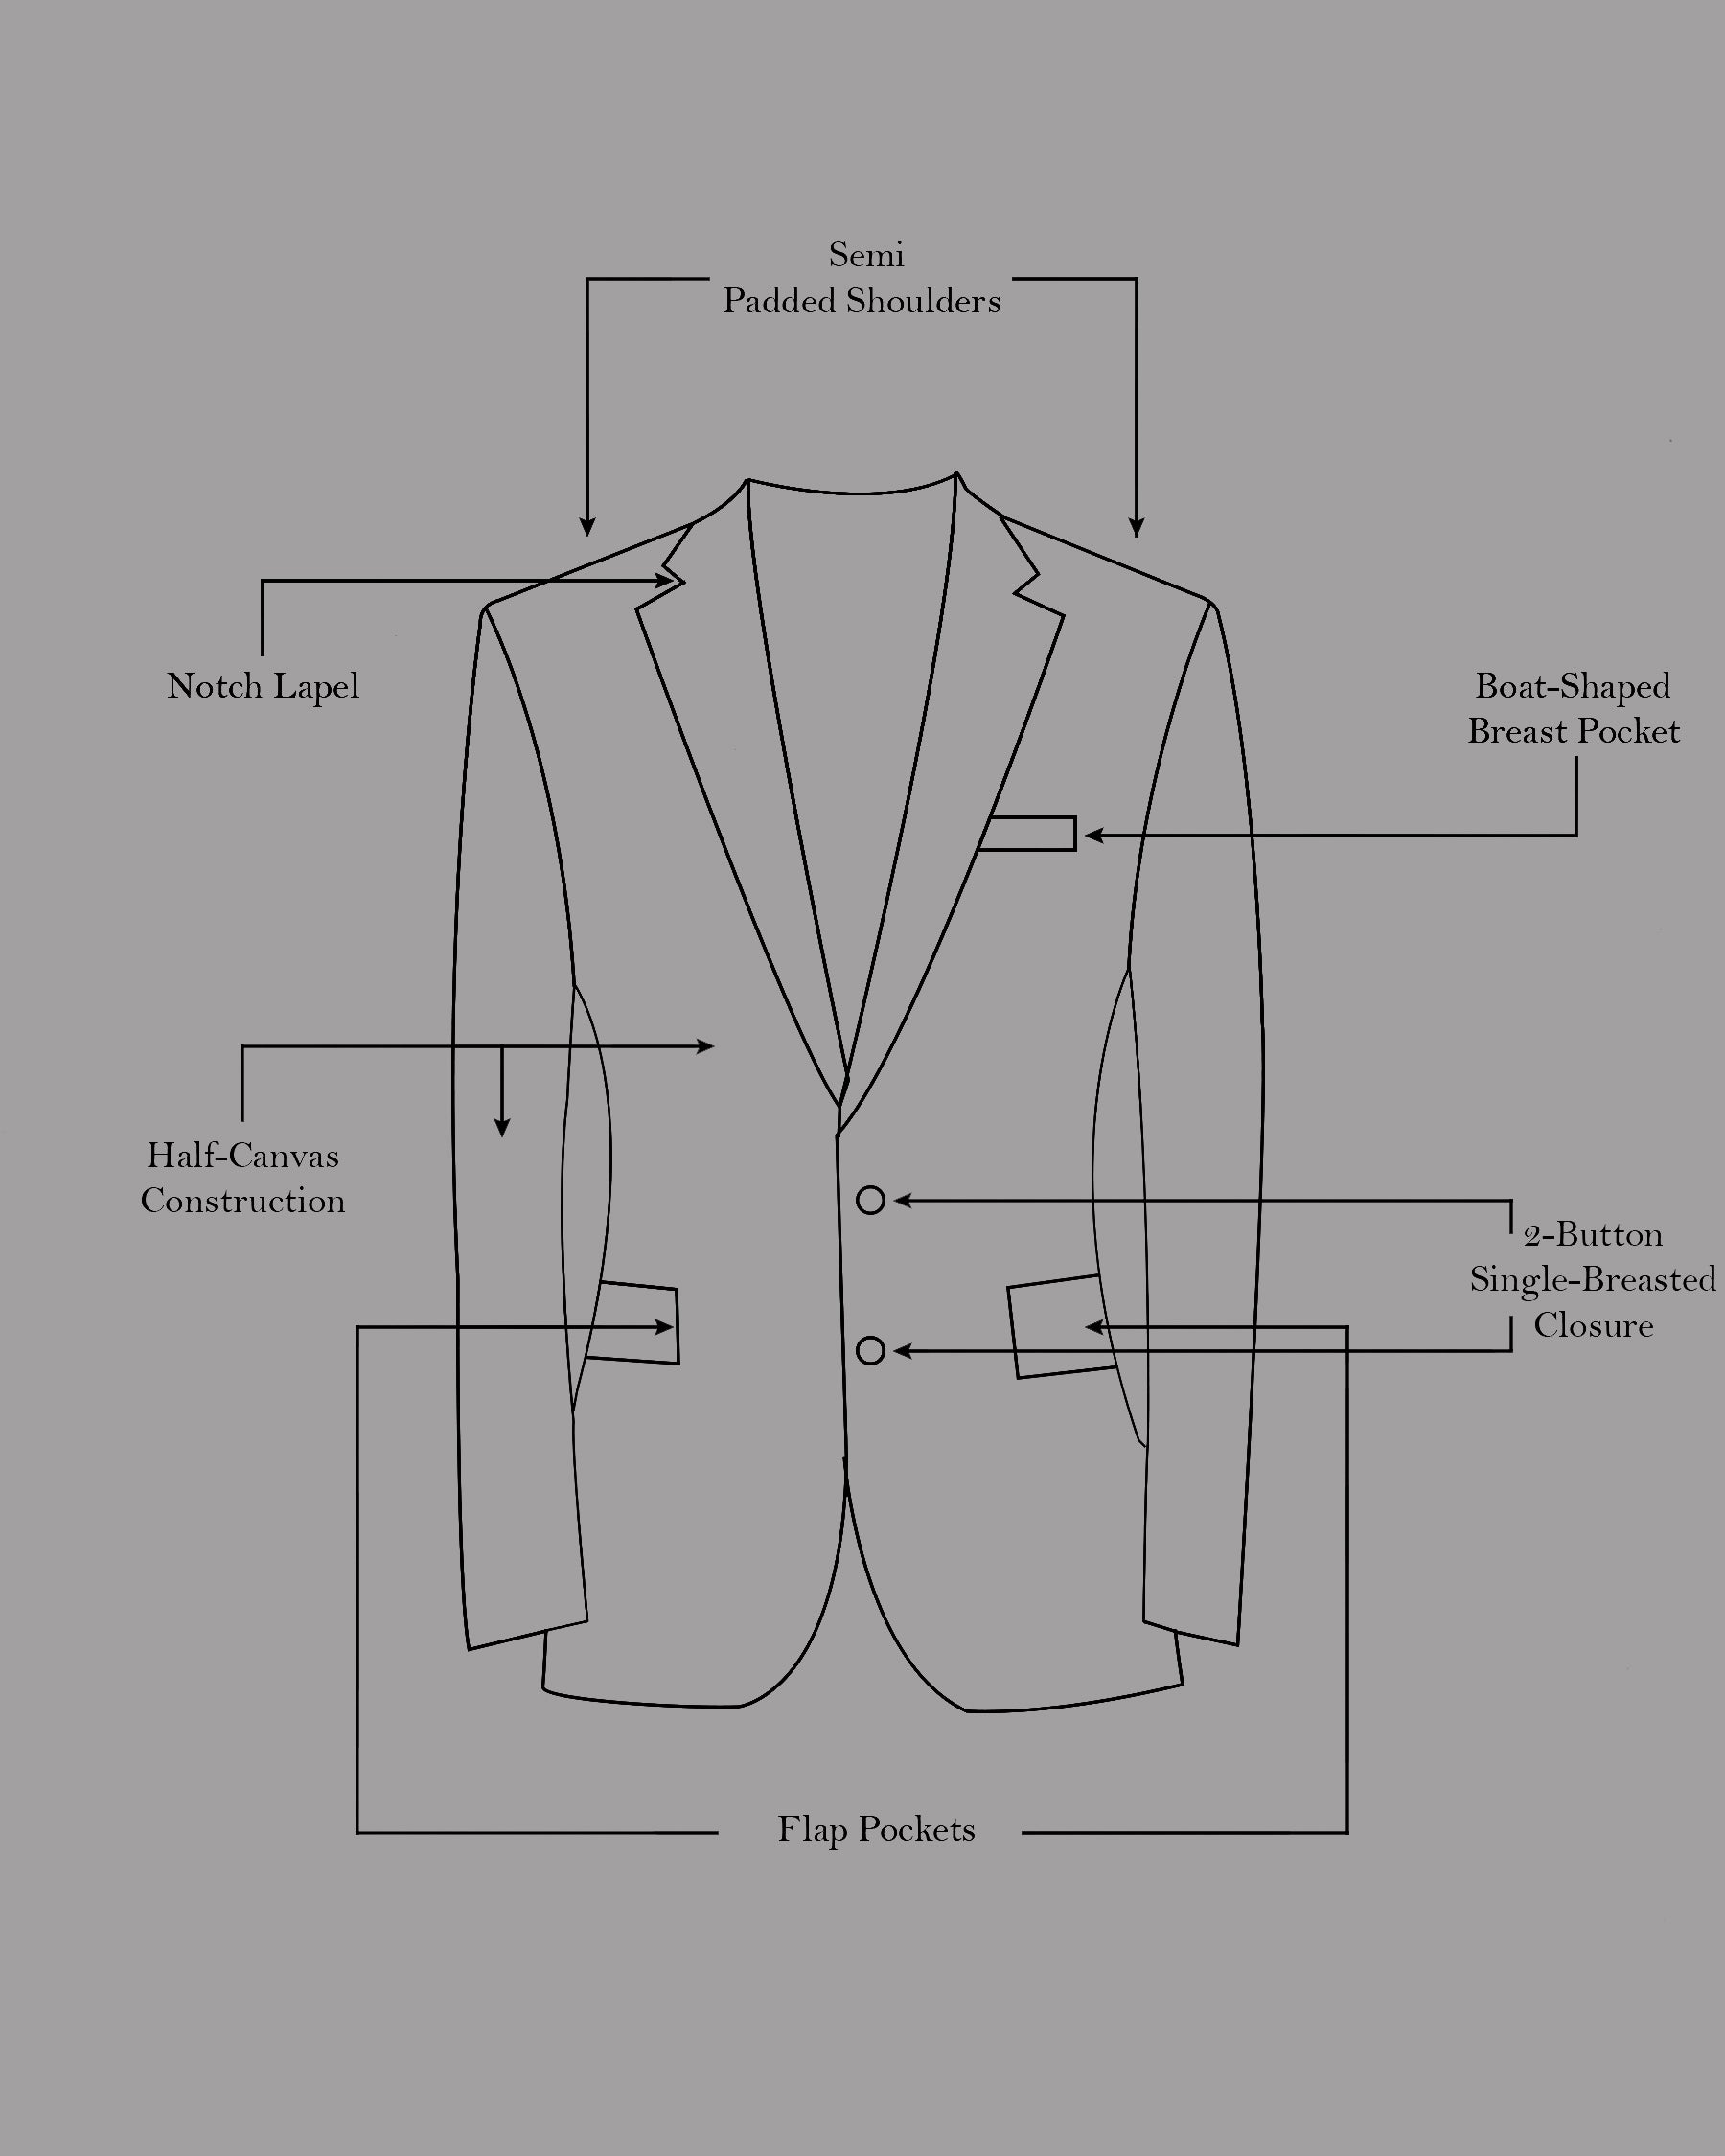 Mine Shaft Gray Wool Rich Designer Suit